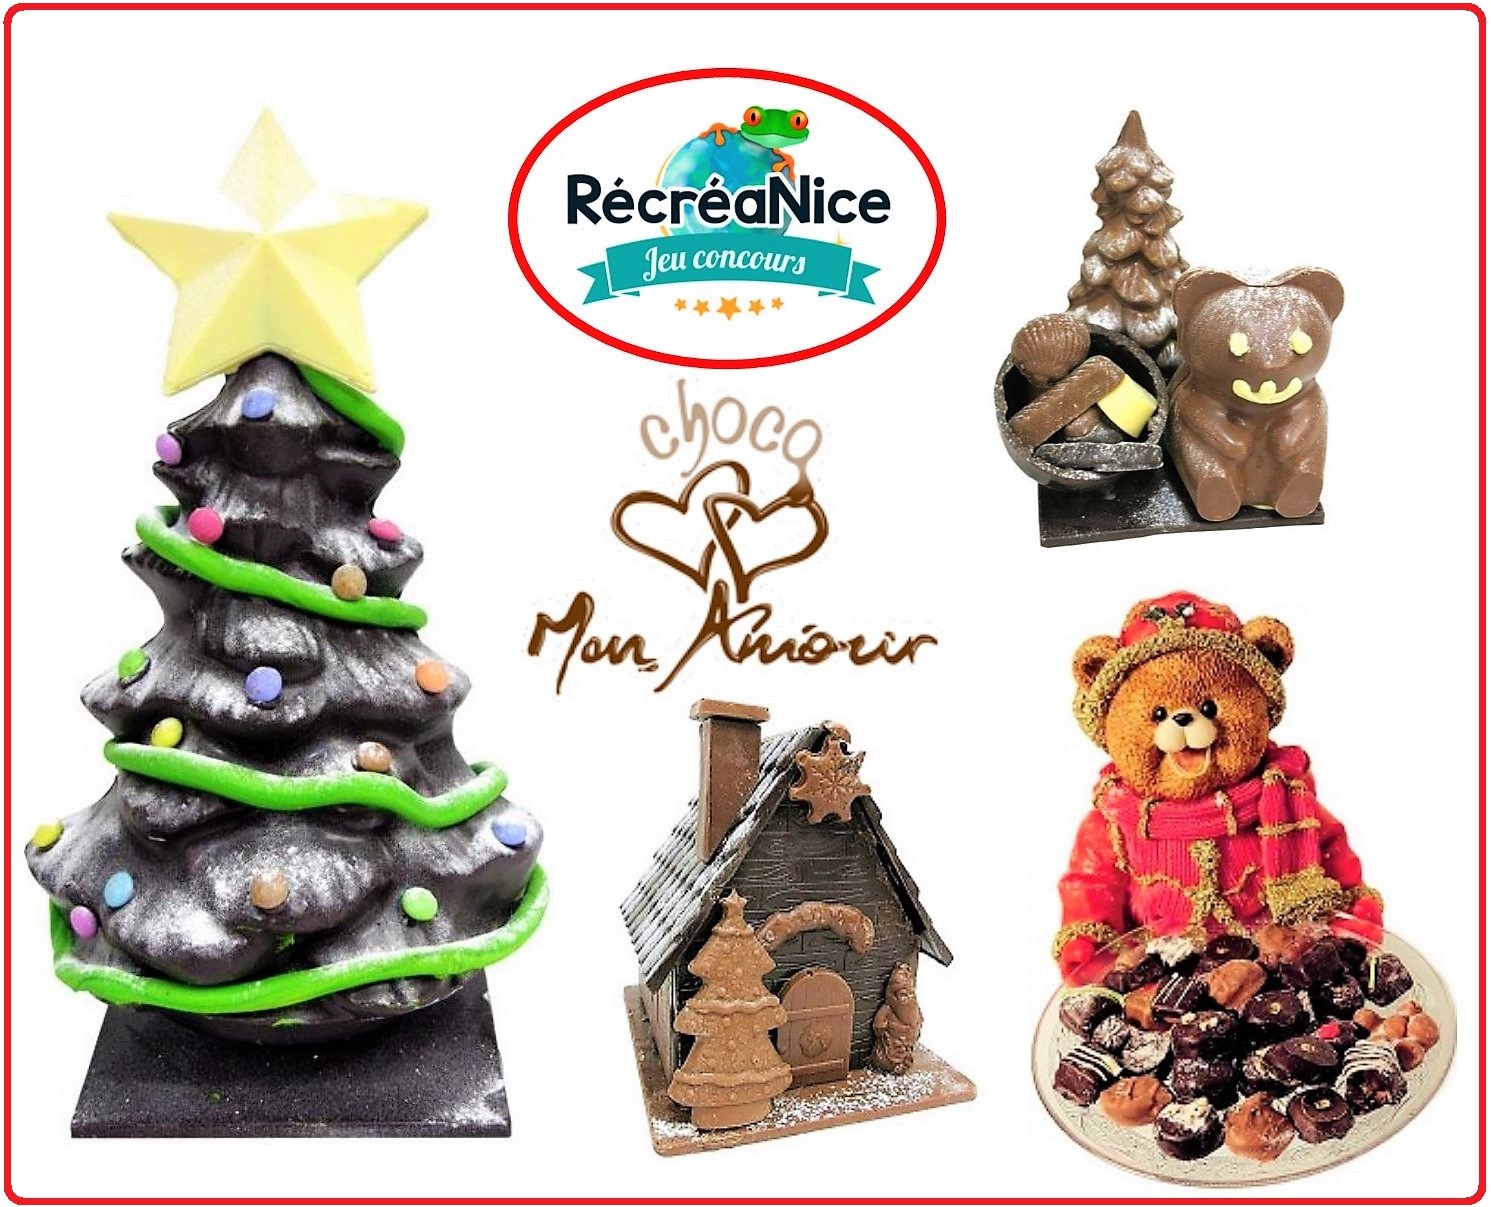 Révillon Chocolatier - JEU-CONCOURS SURPRISE ! 😍 Nous vous avons réservé  des cadeaux pour les fêtes ! Pour tenter de remporter ce joli lot composé  d'une bougie, d'un carnet, d'un stylo et